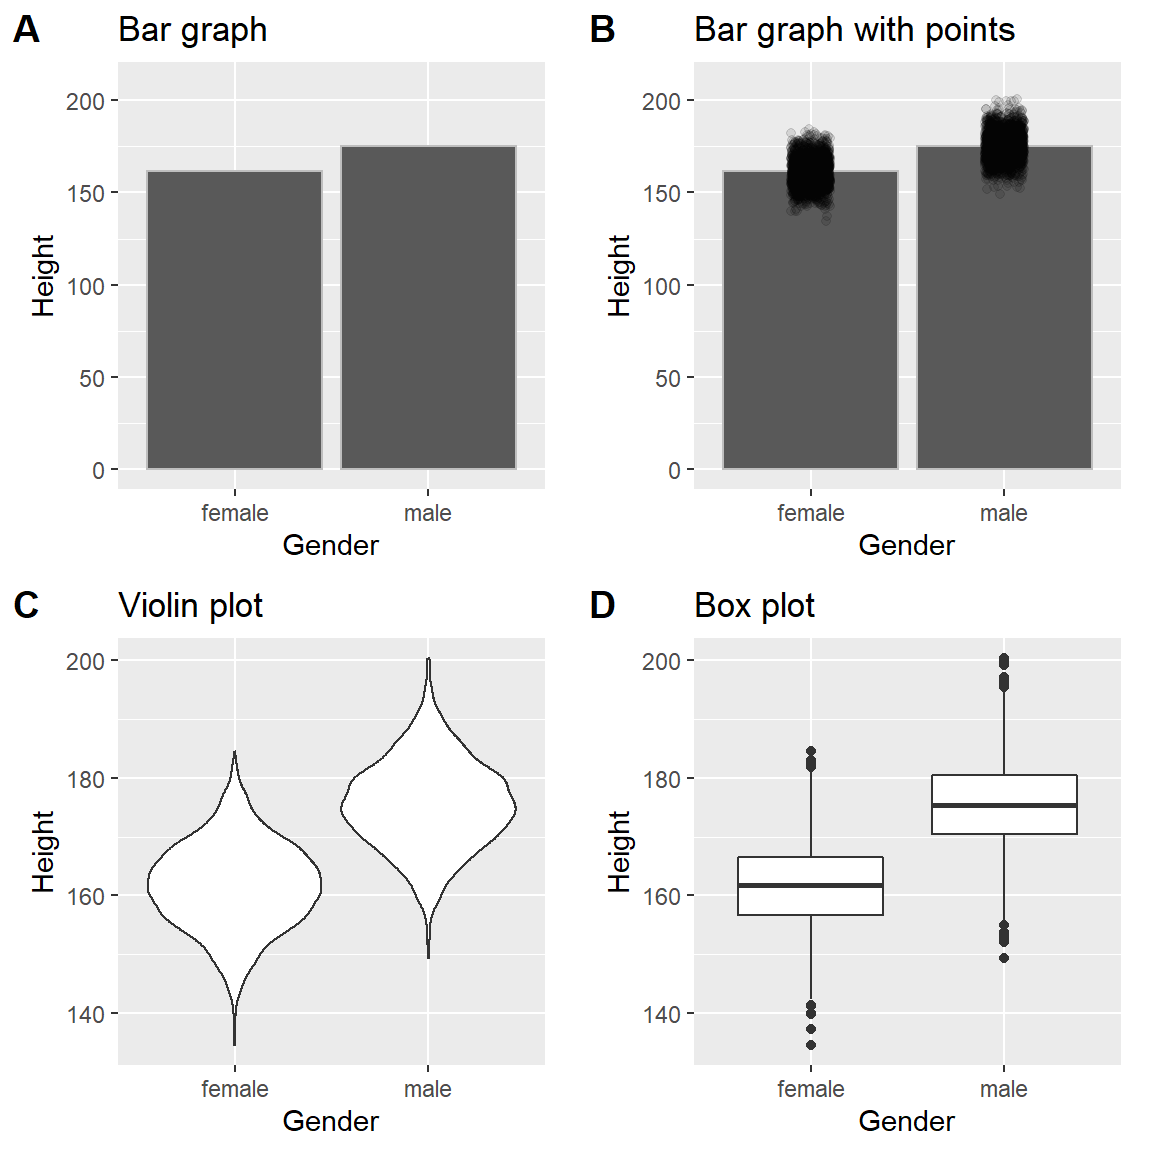 Cuatro maneras diferentes de graficar la diferencia en altura entre hombres y mujeres en la base de datos NHANES. El Panel A grafica las medias de ambos grupos, lo que no permite evaluar el empalme relativo entre las dos distribuciones. El Panel B muestra las mismas barras, pero sobrepone los puntos de datos, dispersándolos un poco para que se pueda ver la distribución general. El Panel C muestra una gráfica violín, la cual muestra la distribución de los datos en cada grupo. El Panel D muestra un diagrama de caja (box plot), el cual resalta el ancho de la distribución, además de presentar los valores atípicos (*outliers*, los cuales se muestran como puntos individuales).